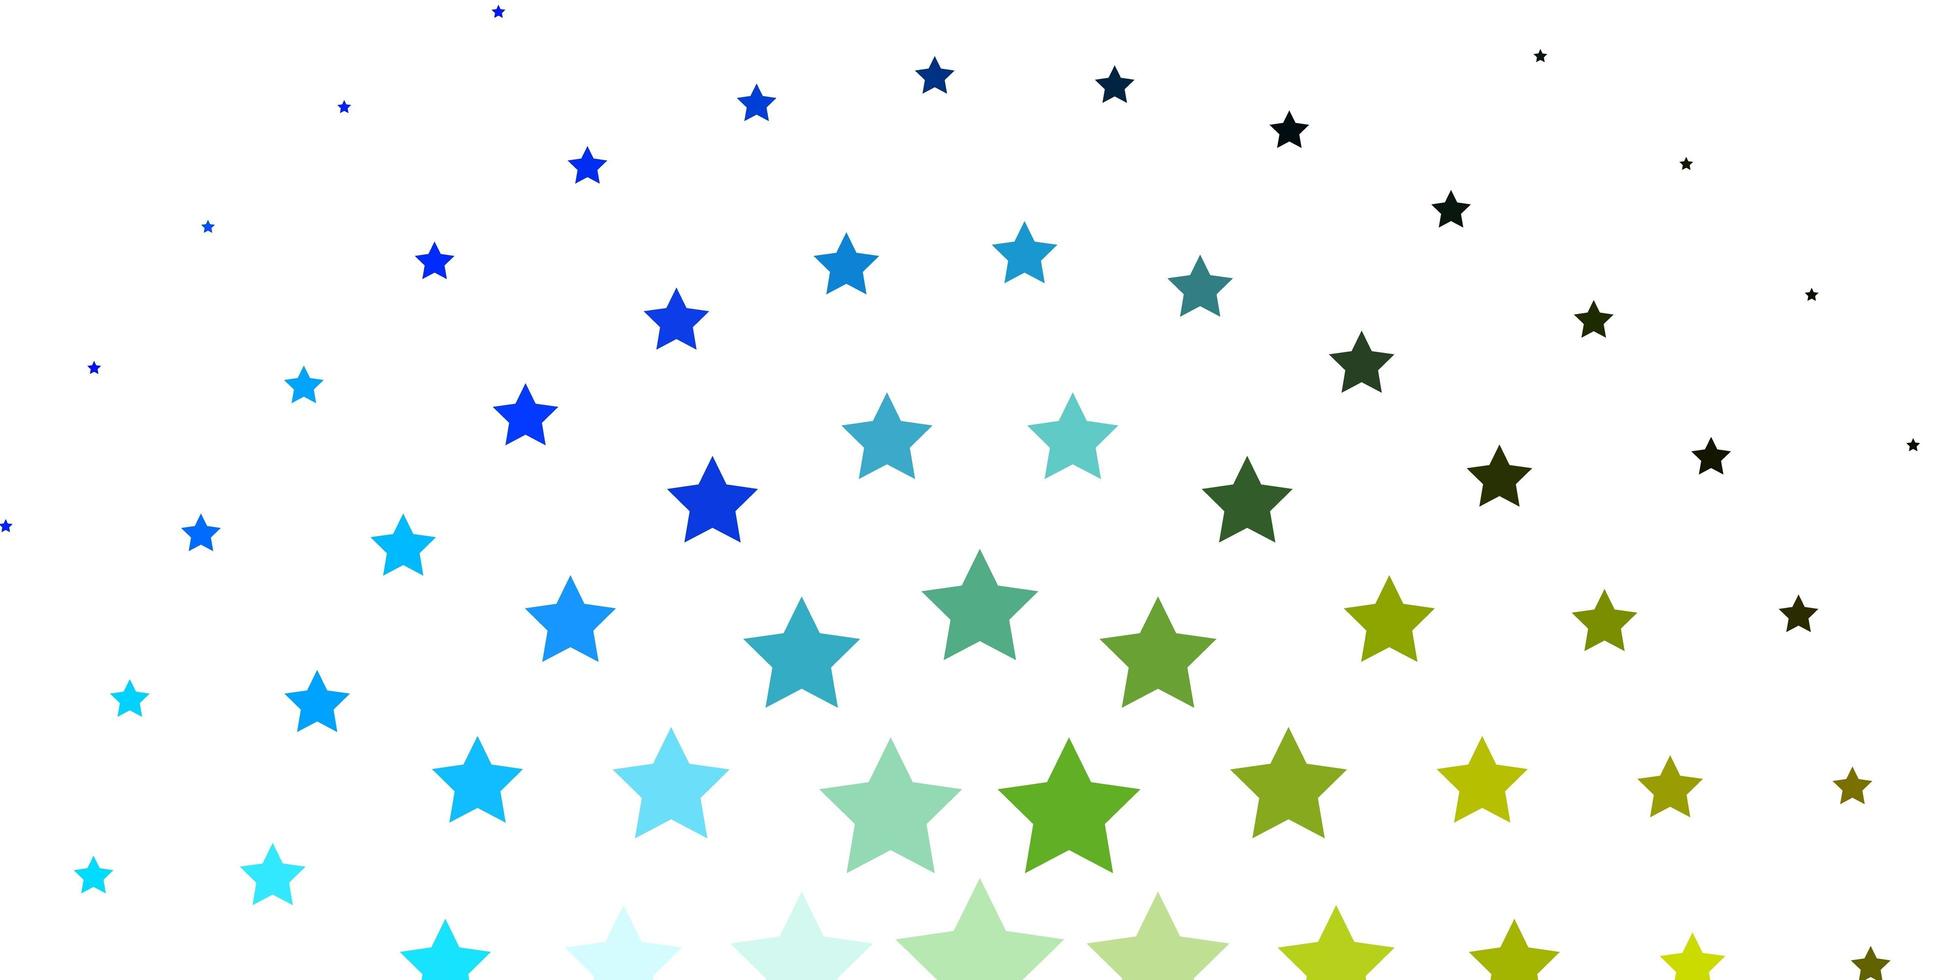 modelo de vetor azul claro e verde com estrelas de néon. ilustração abstrata geométrica moderna com estrelas. padrão para embrulhar presentes.